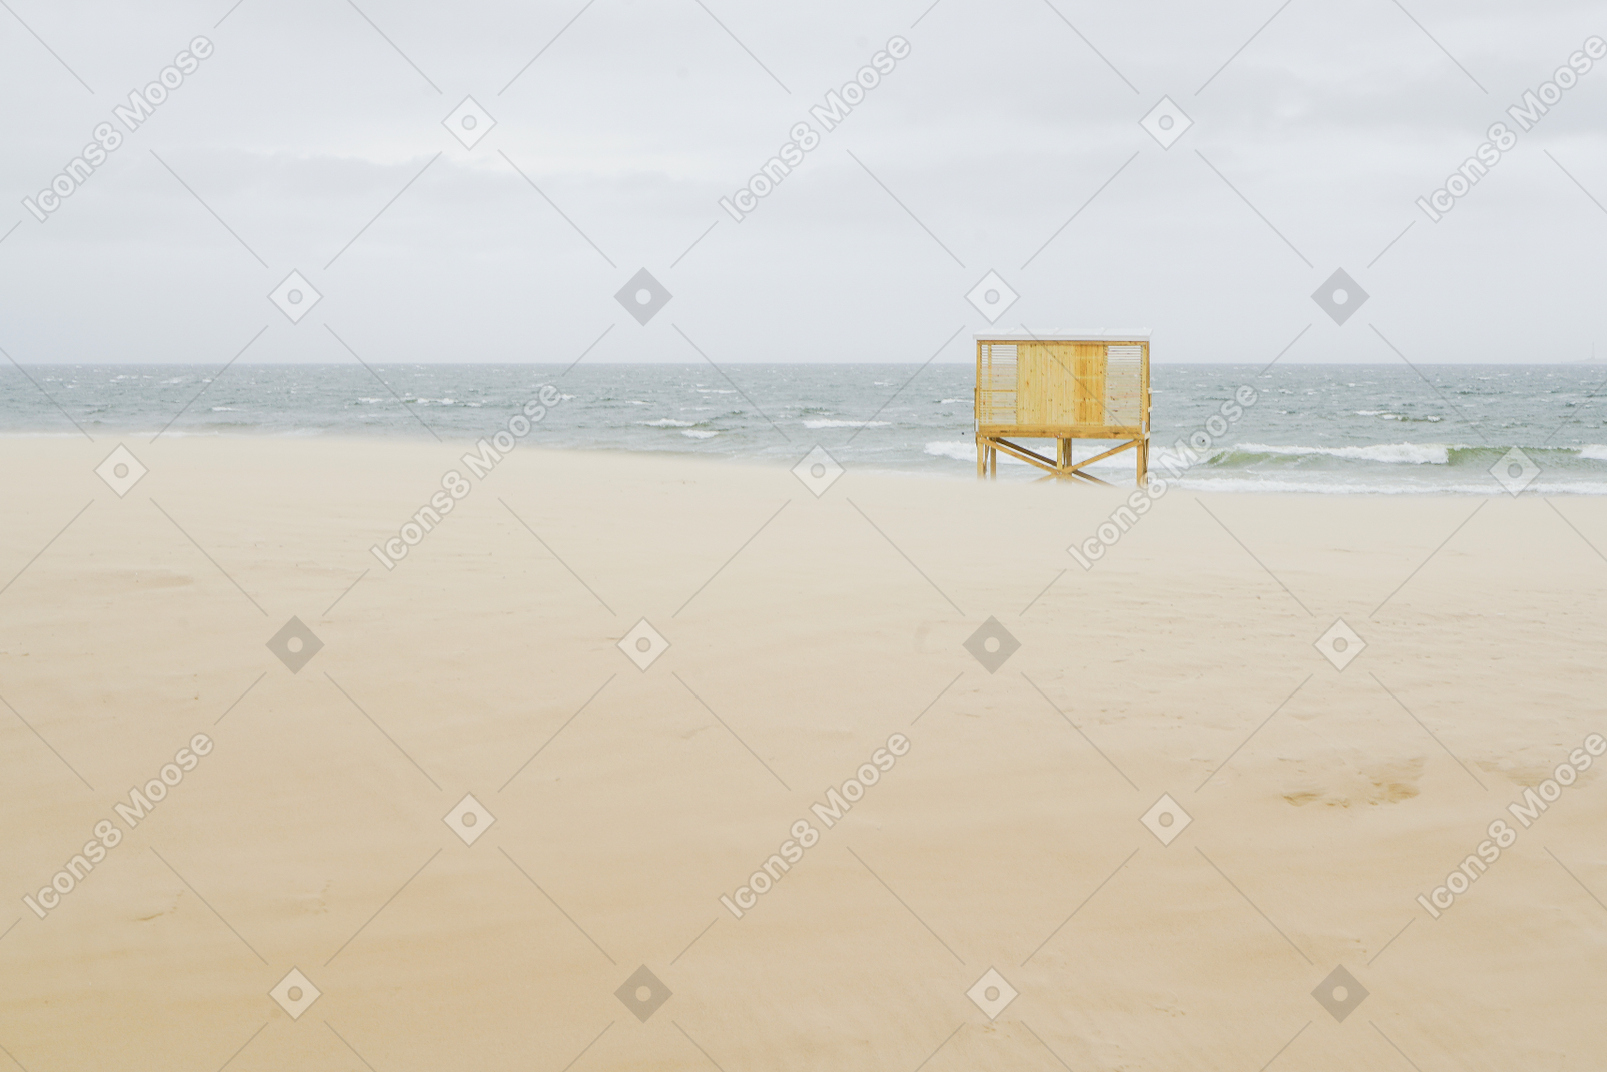 Orilla del mar con una cabaña de playa amarilla